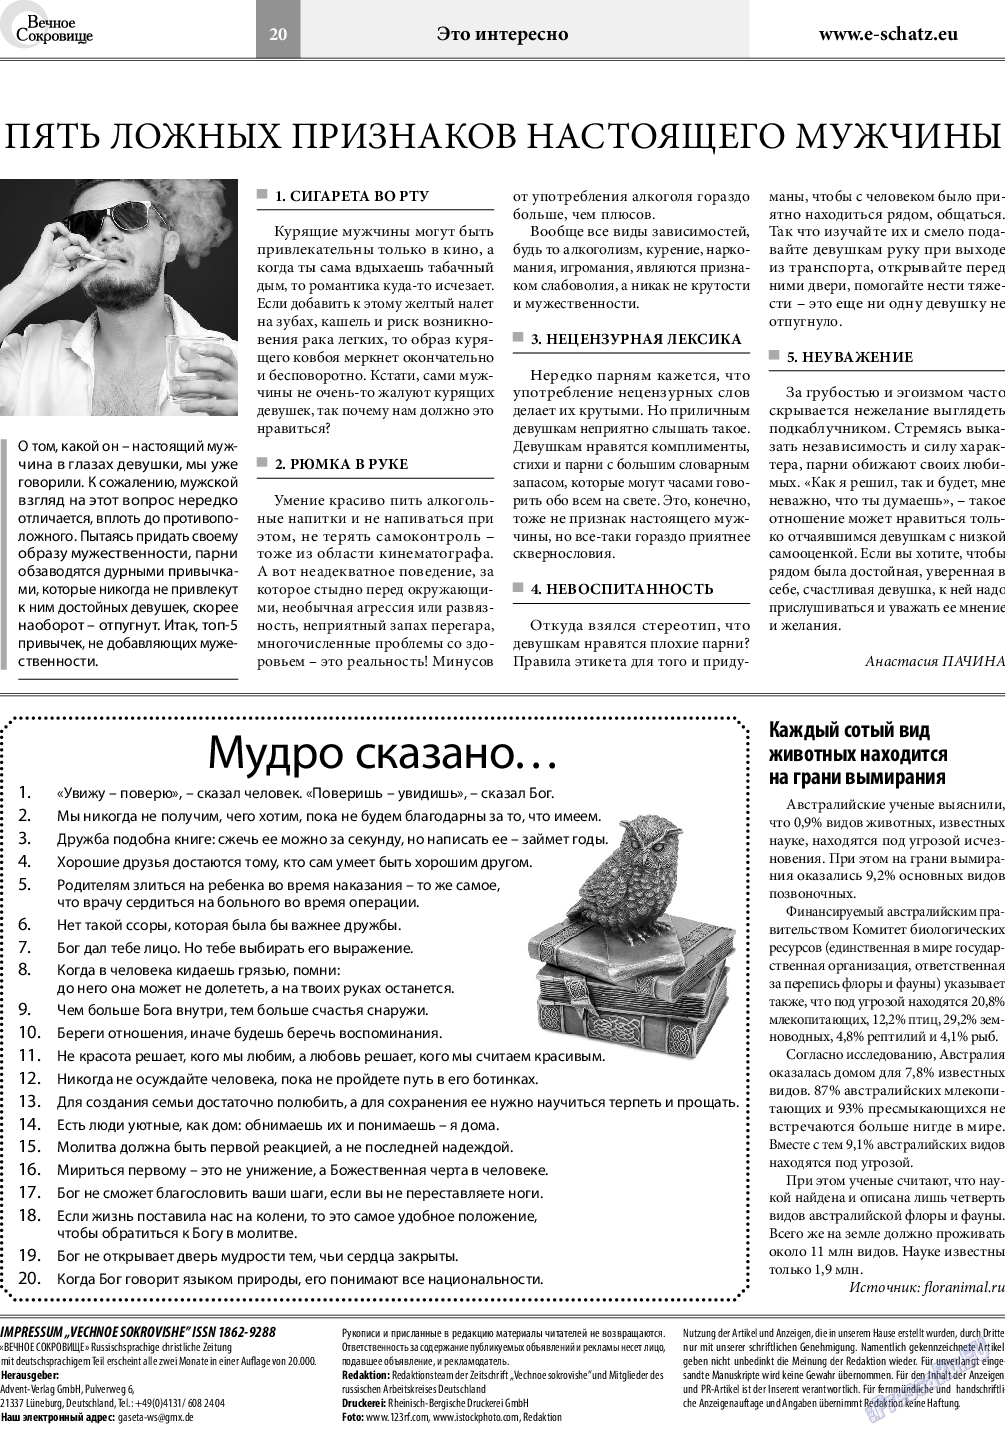 Вечное сокровище, газета. 2019 №1 стр.20